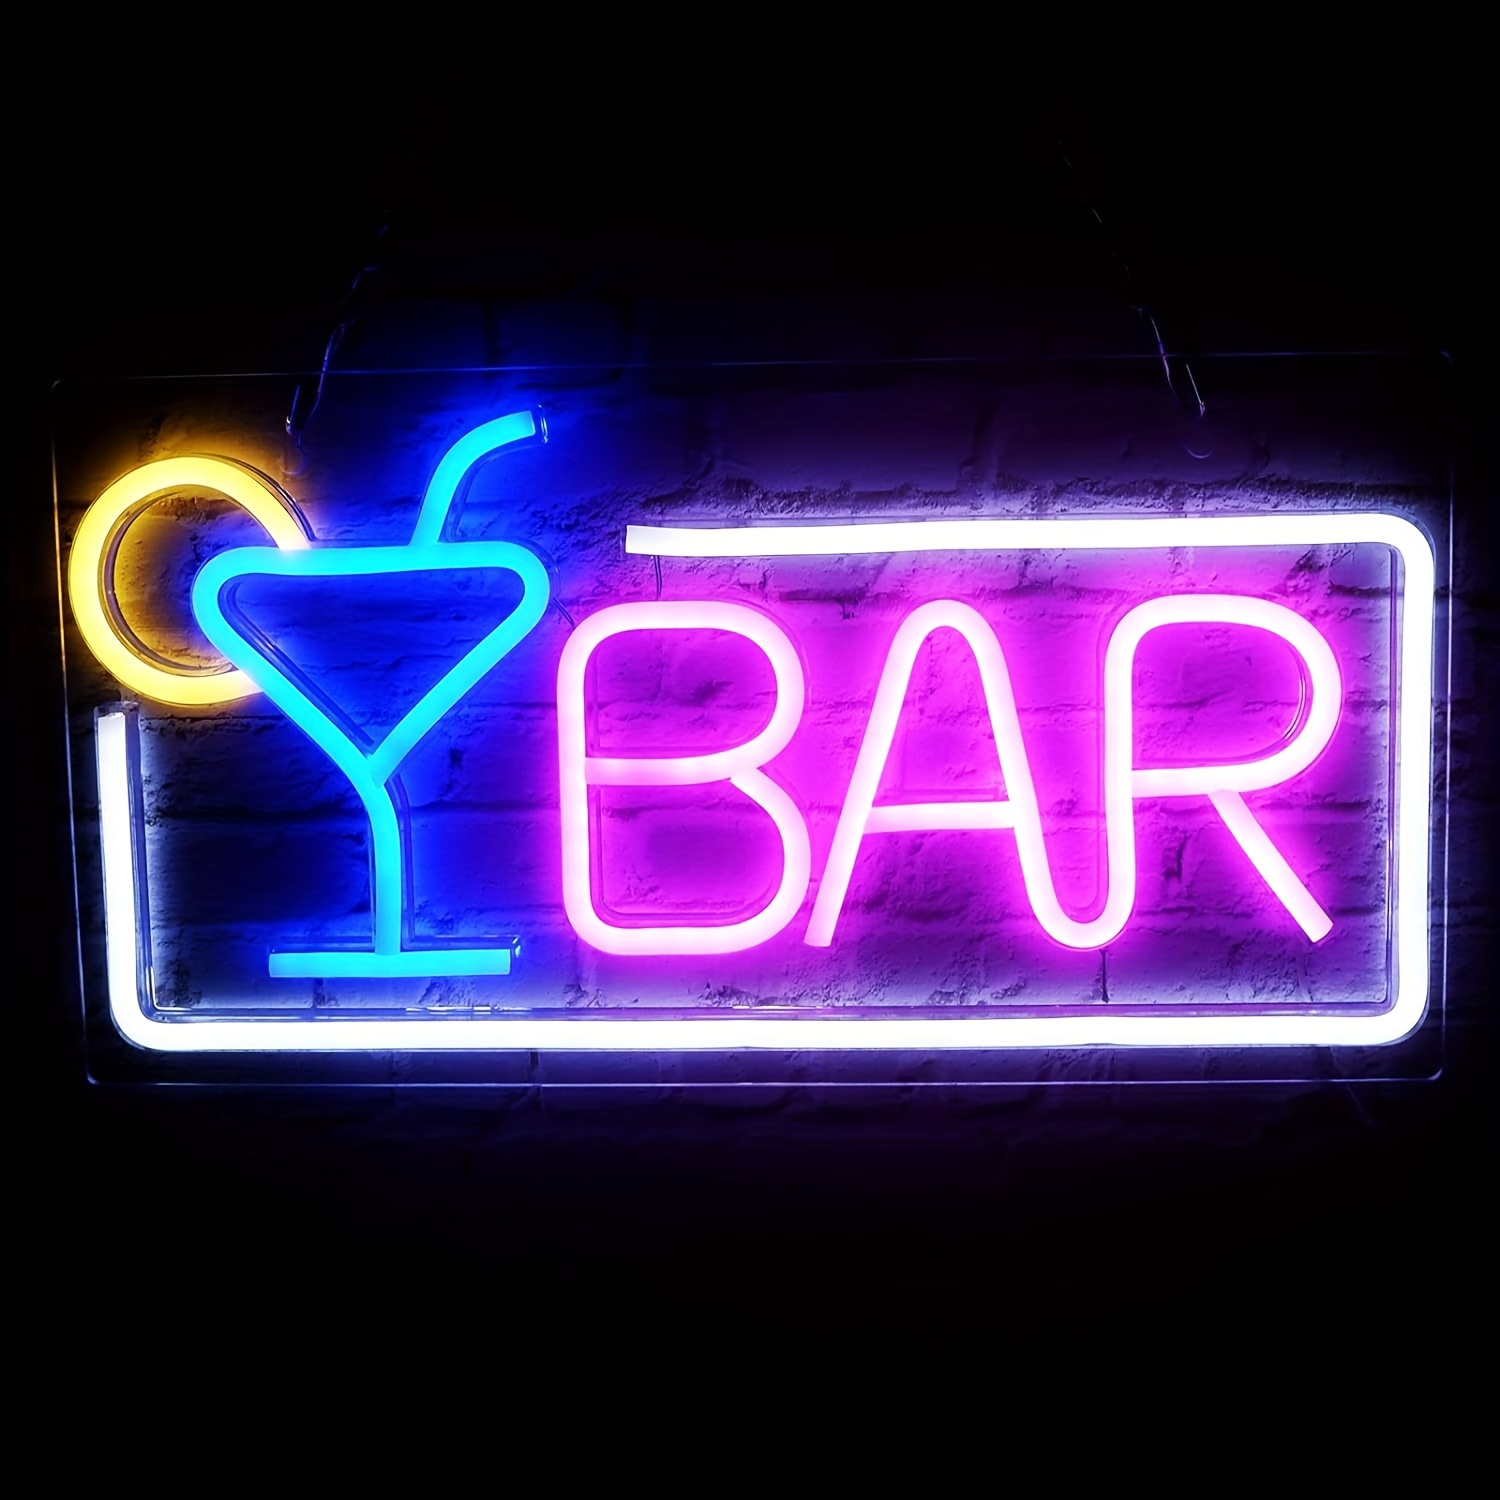 Beach Bar Schild Neon Grafik Beleuchtet Zeigt Sommerrestaurant Bar